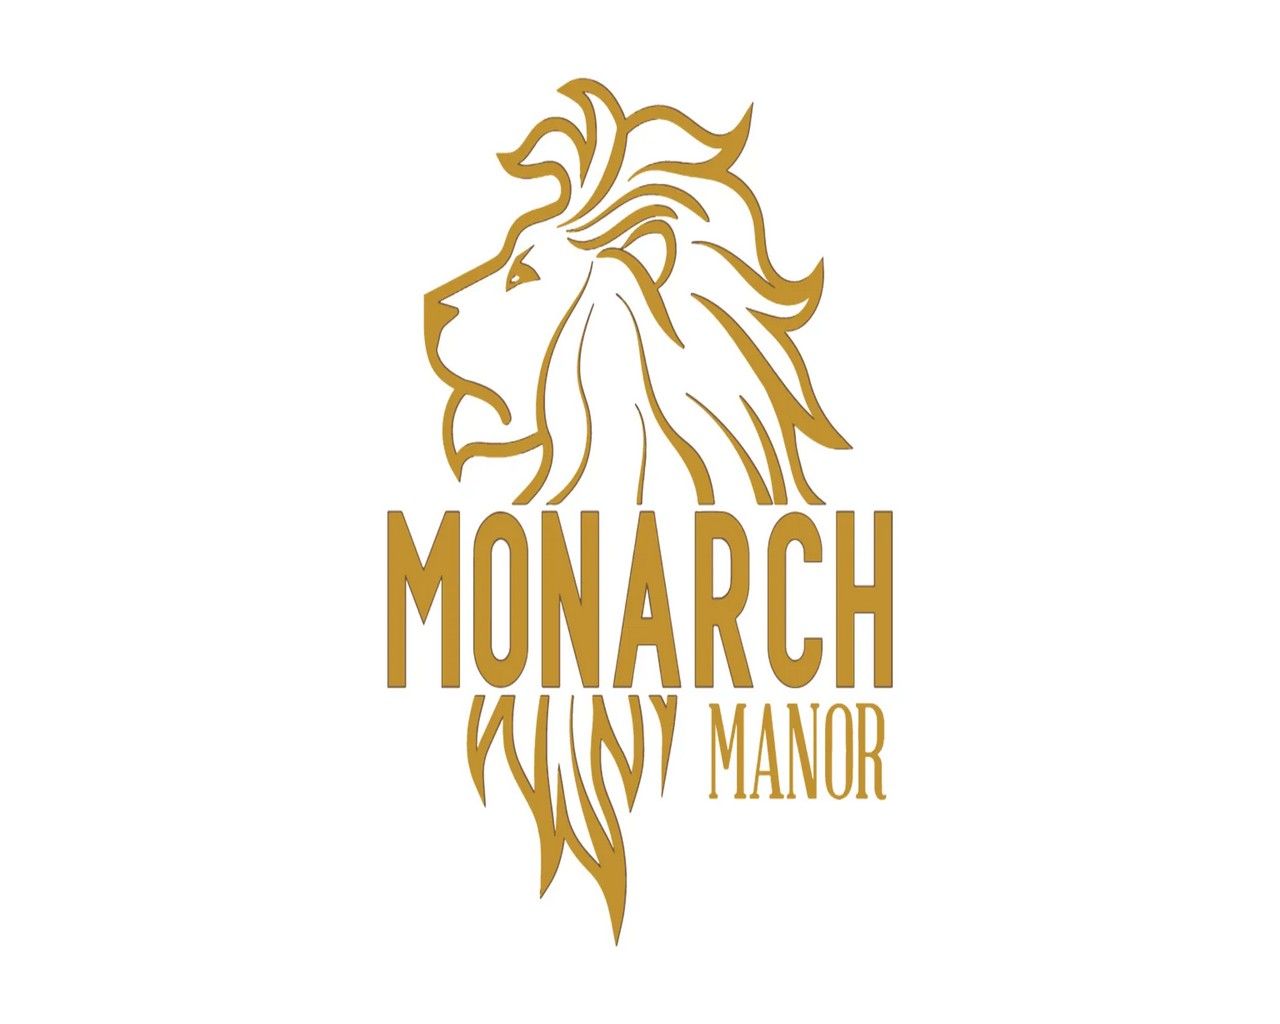 Monarch Manor